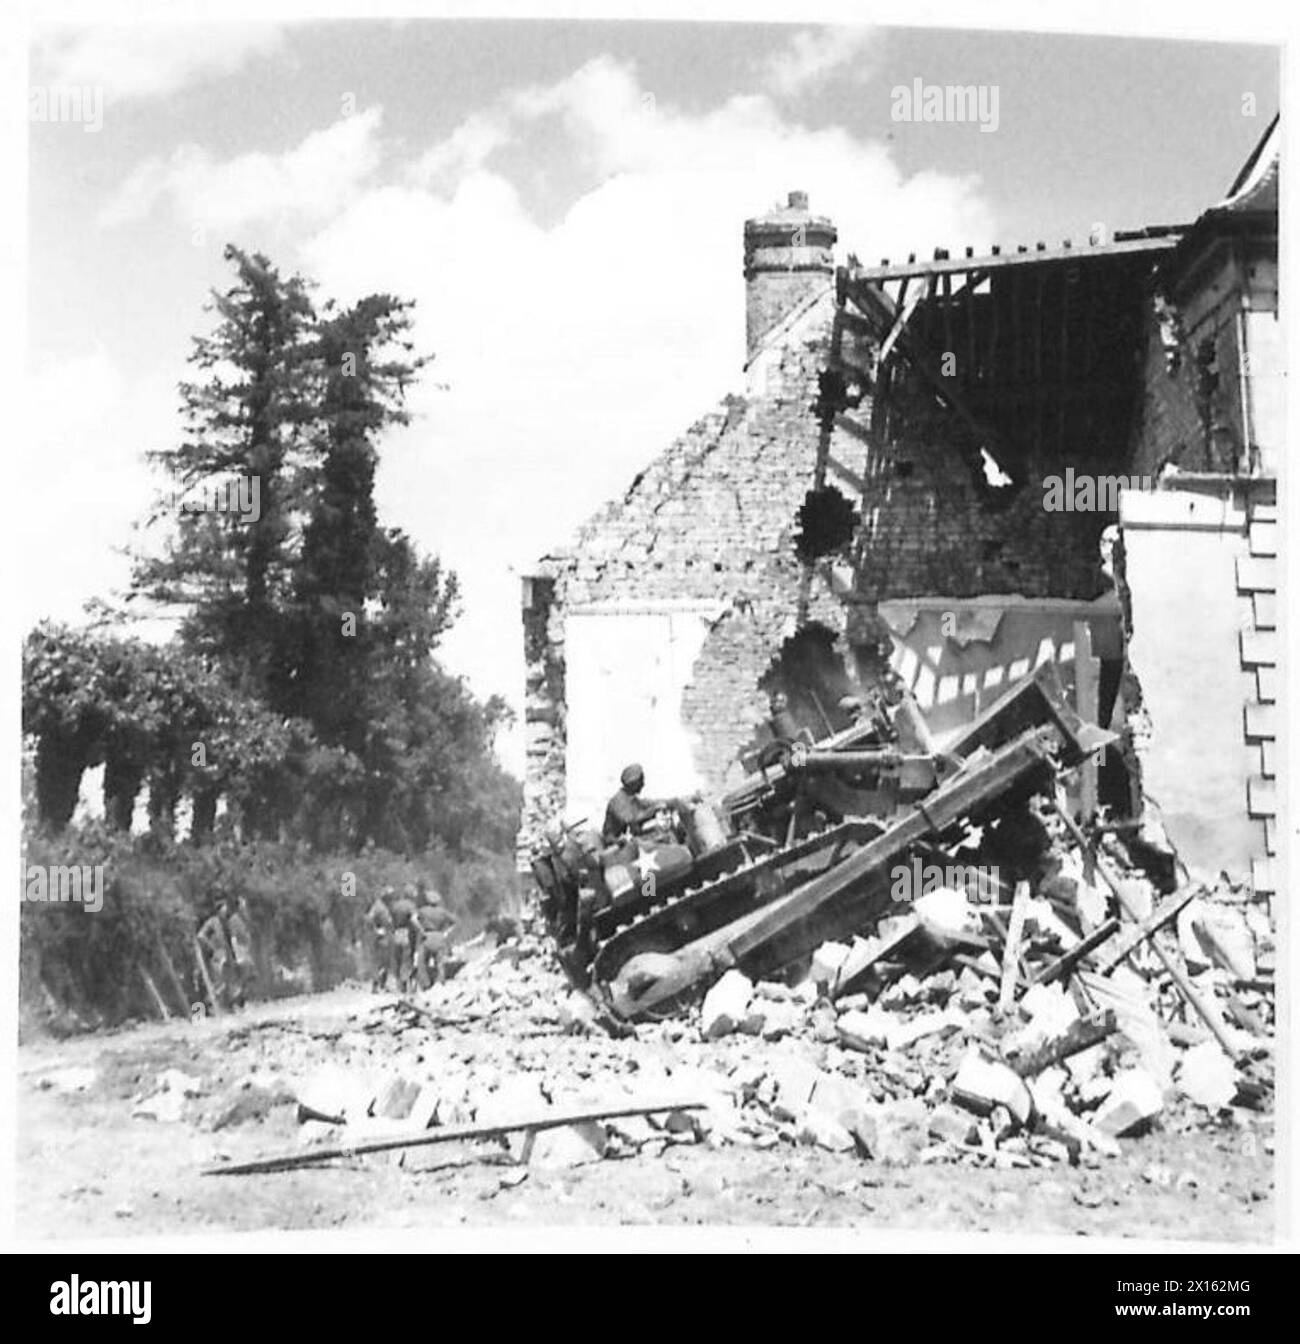 BULLDOZER BESEITIGEN HINDERNISSE - der Bulldozer stürzt in das Gebäude, um die Überreste der noch stehenden Mauern niederzuschlagen und die Trümmer von der britischen Armee, 21. Armeegruppe, zu entfernen Stockfoto